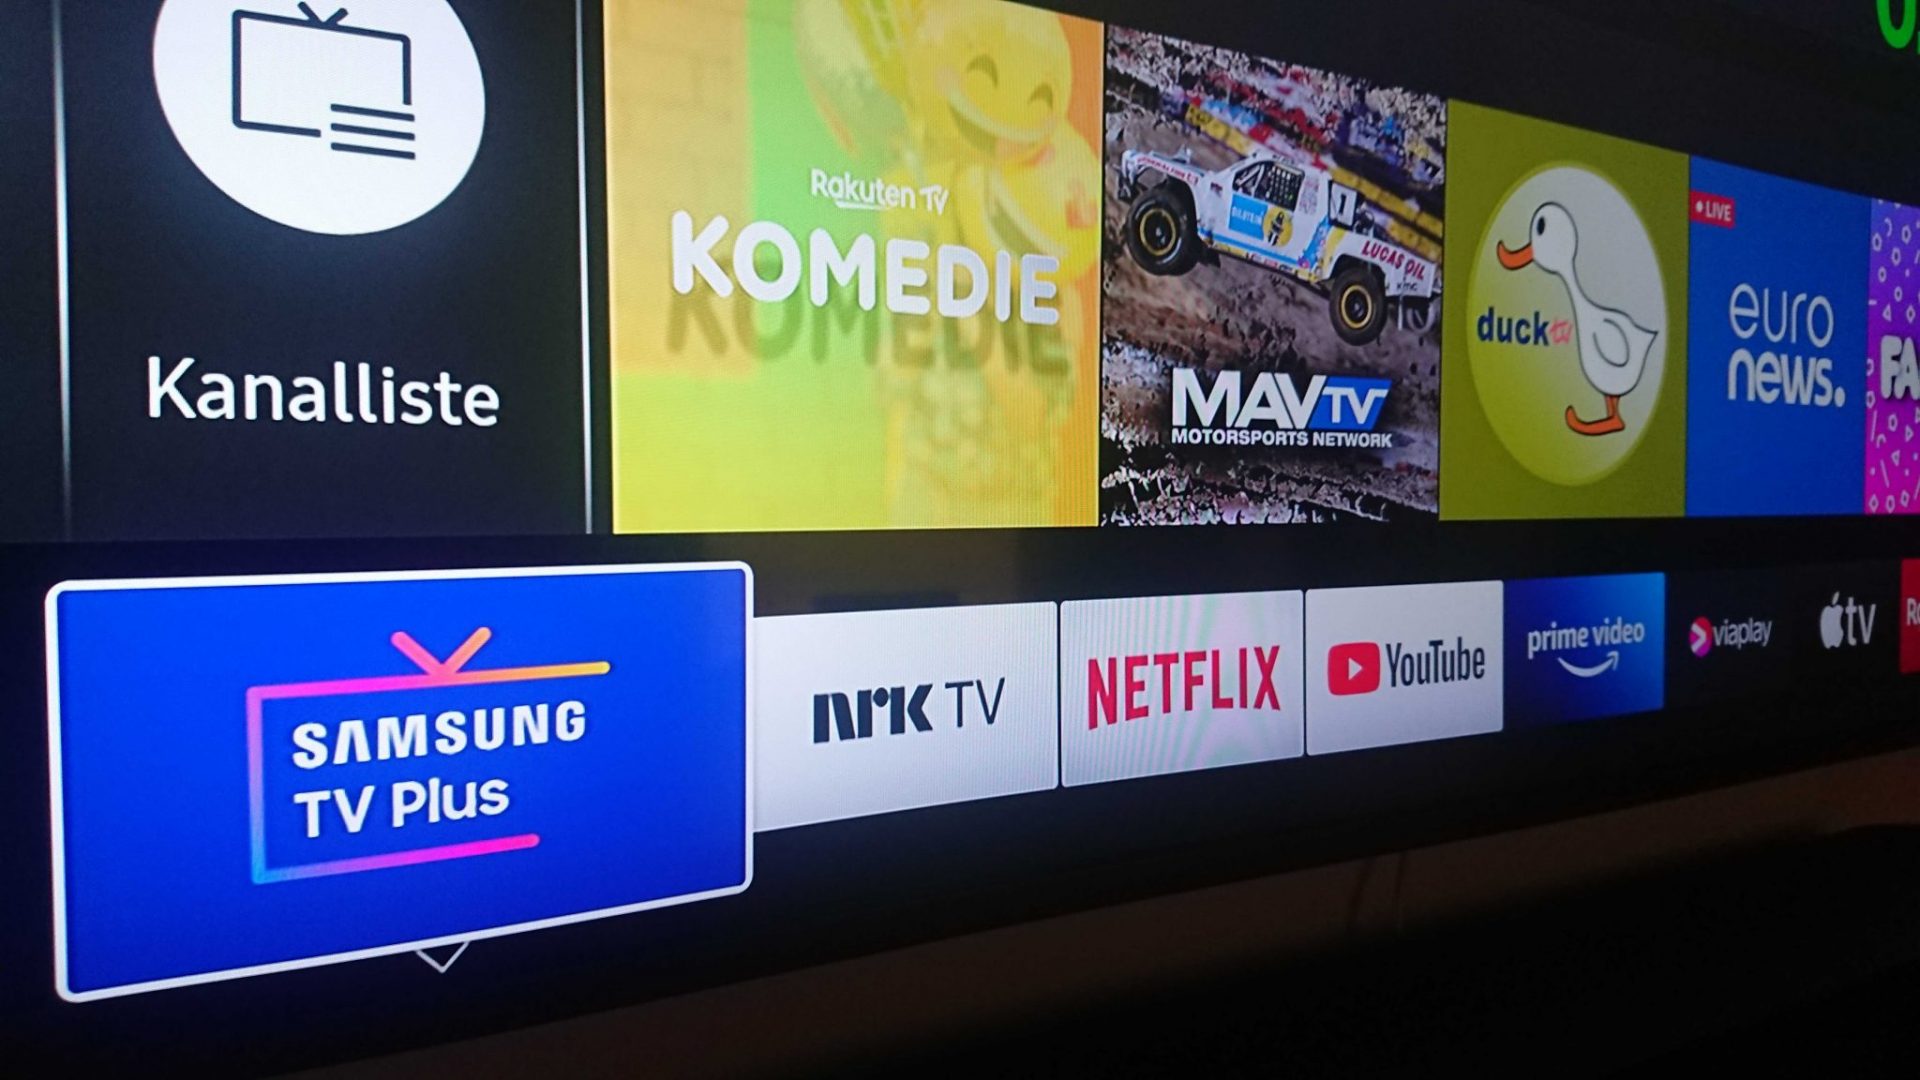 Nu er Samsung TV Plus tilgængelig i Danmark